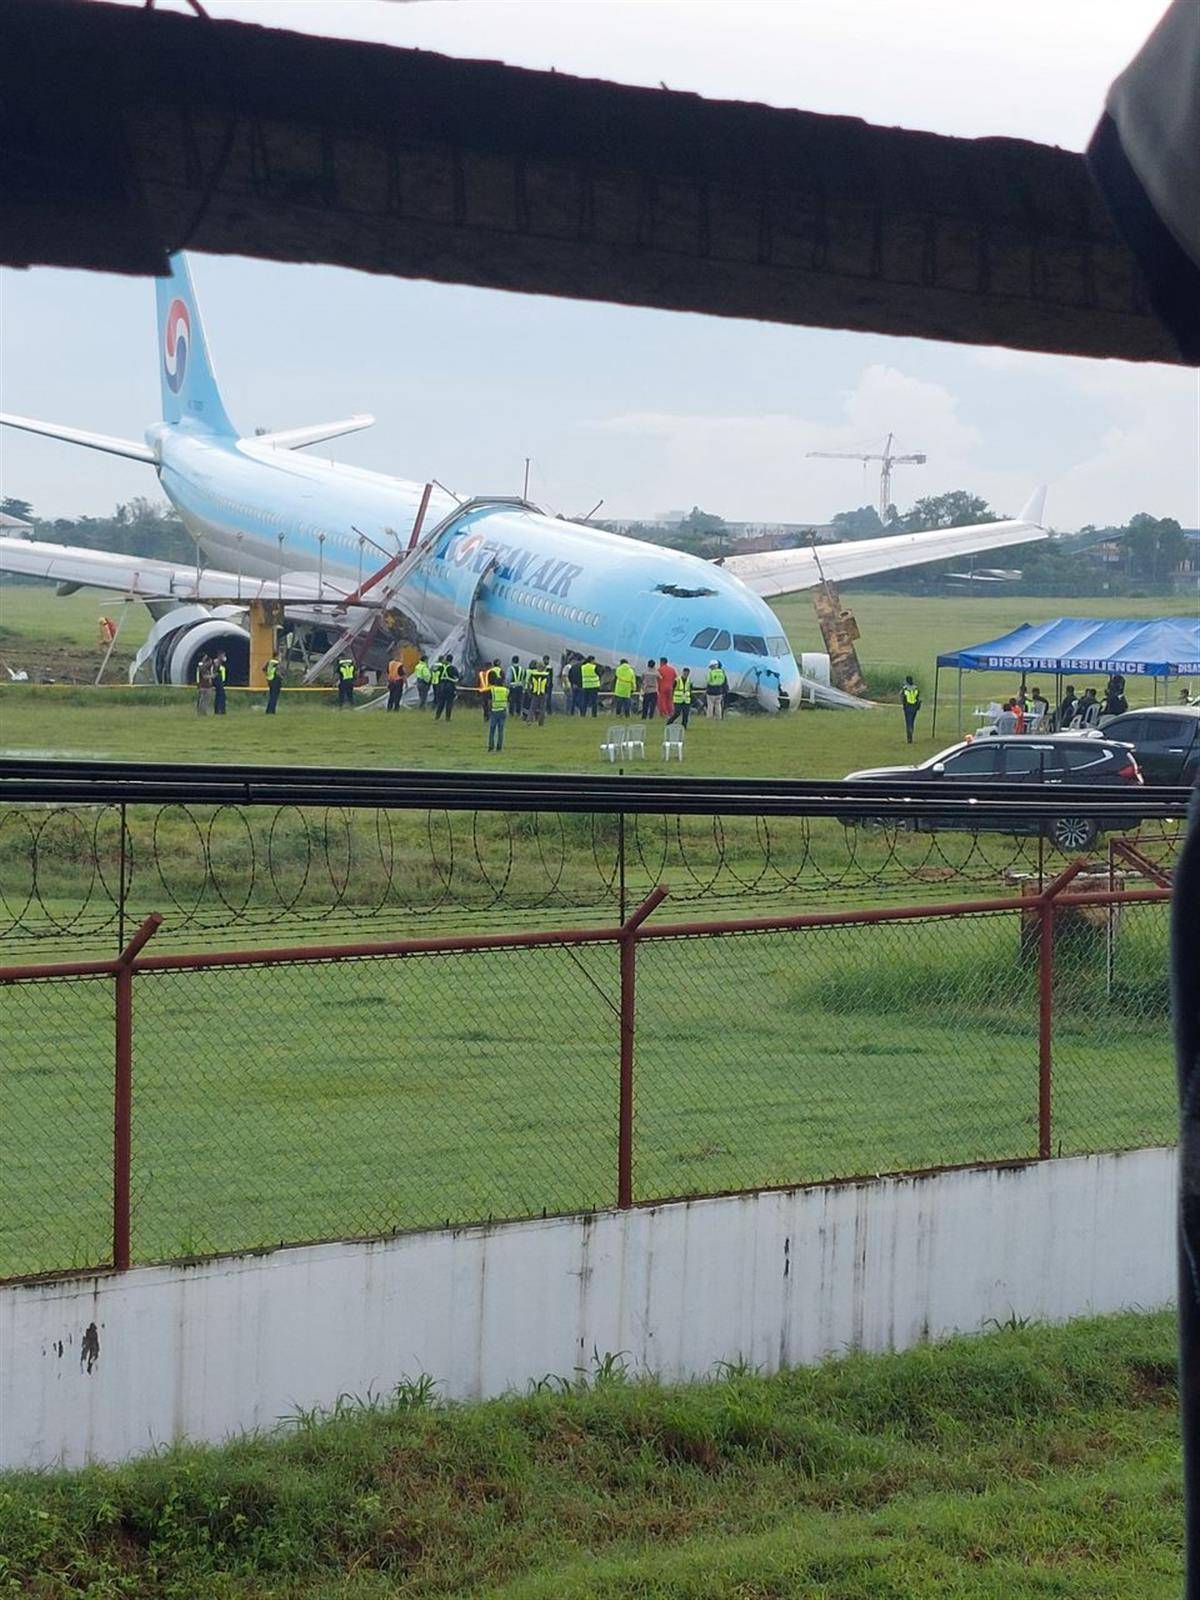 载有173人客机在菲律宾机场着陆时冲出跑道,没有人员伤亡